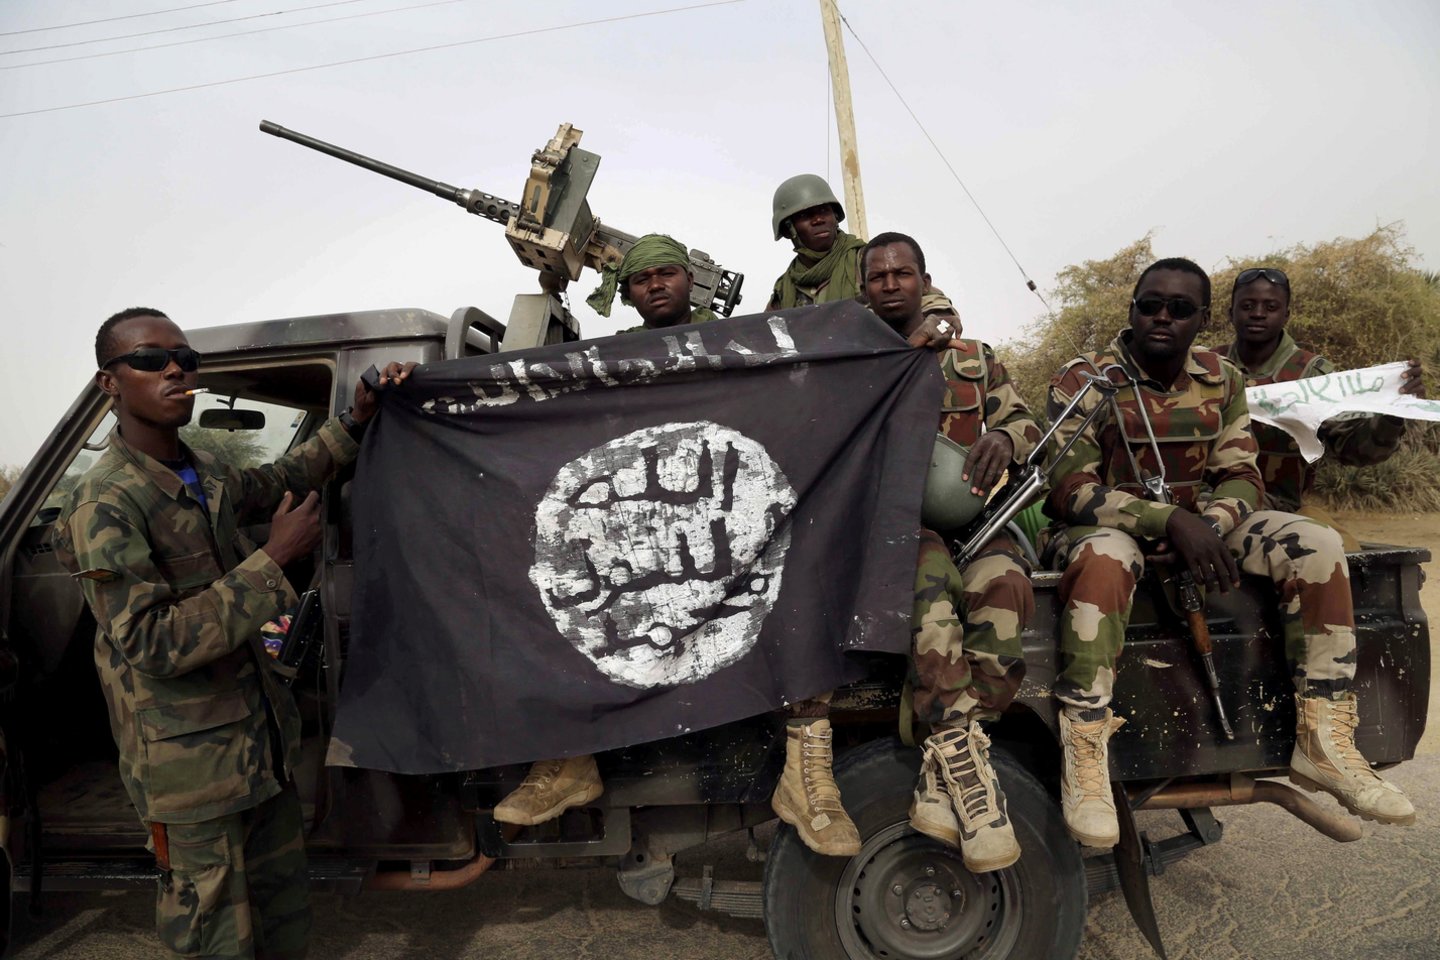  Čado kariuomenė ketvirtadienį pranešė įvykdžiusi operaciją prieš džihadistų judėjimo „Boko Haram“ kovotojus Čado ežero pasienio regione, per kurią žuvo 52 kariai ir 1 000 džihadistų.  <br>Reuters/Scanpix nuotr.